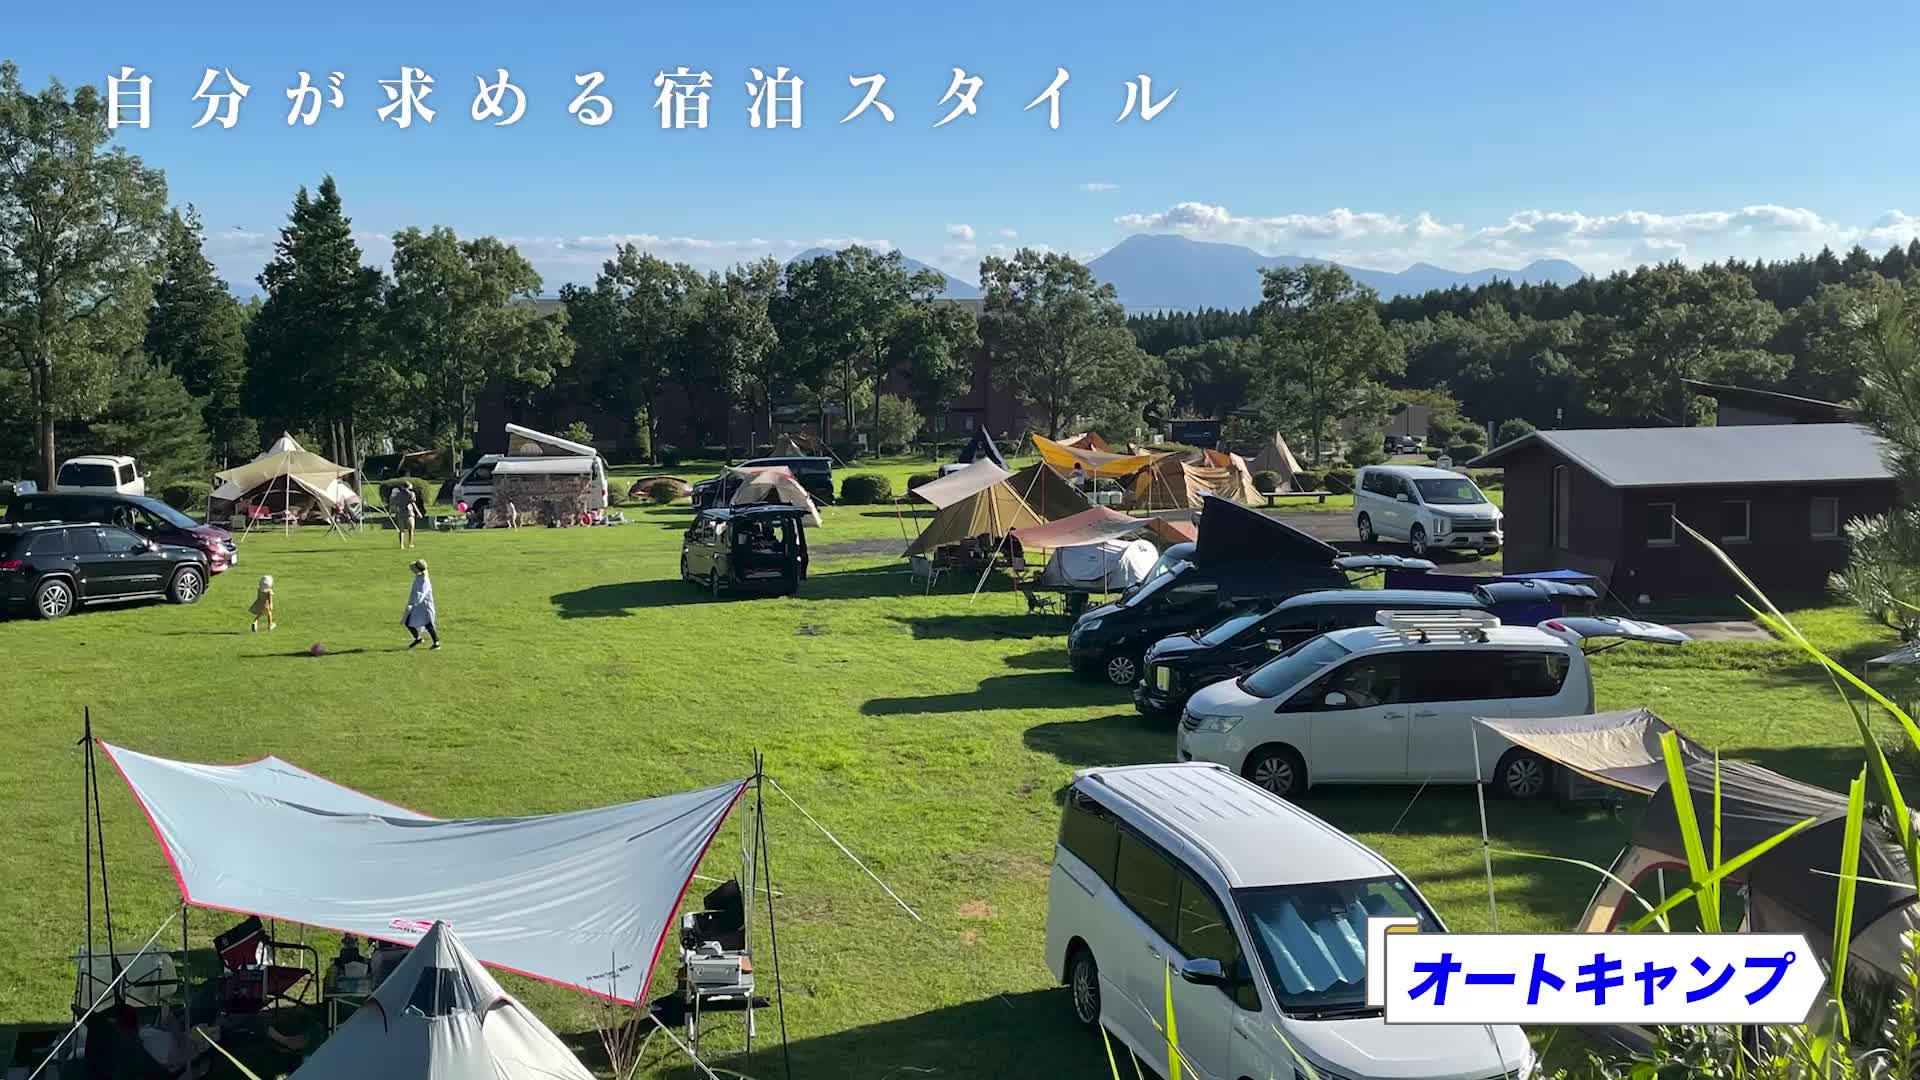 久住高原ホテル TV-CM「新緑イメージ」篇のイメージ